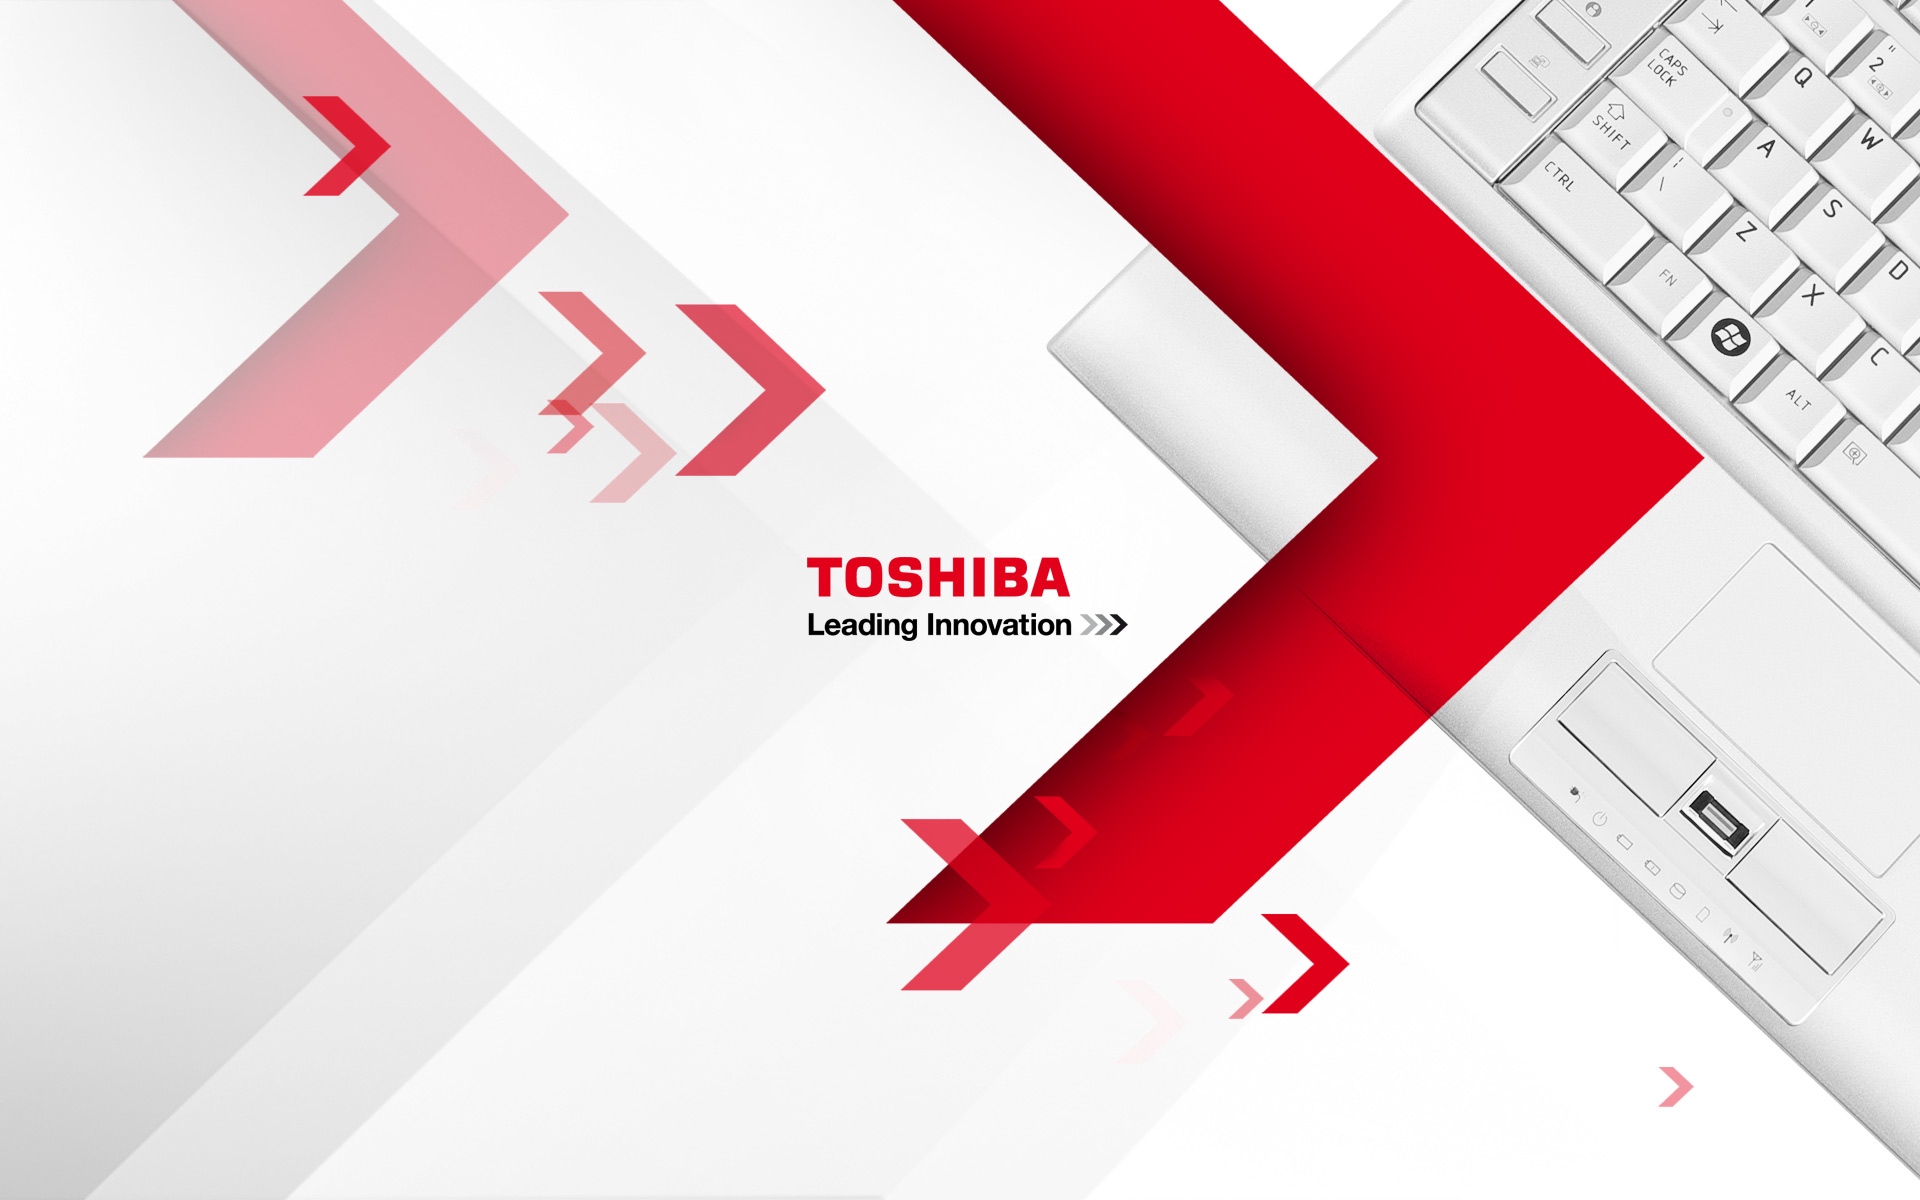 Toshiba voi ostaa LiteON-tallennusyksikön, virallinen ilmoitus tulossa pian?